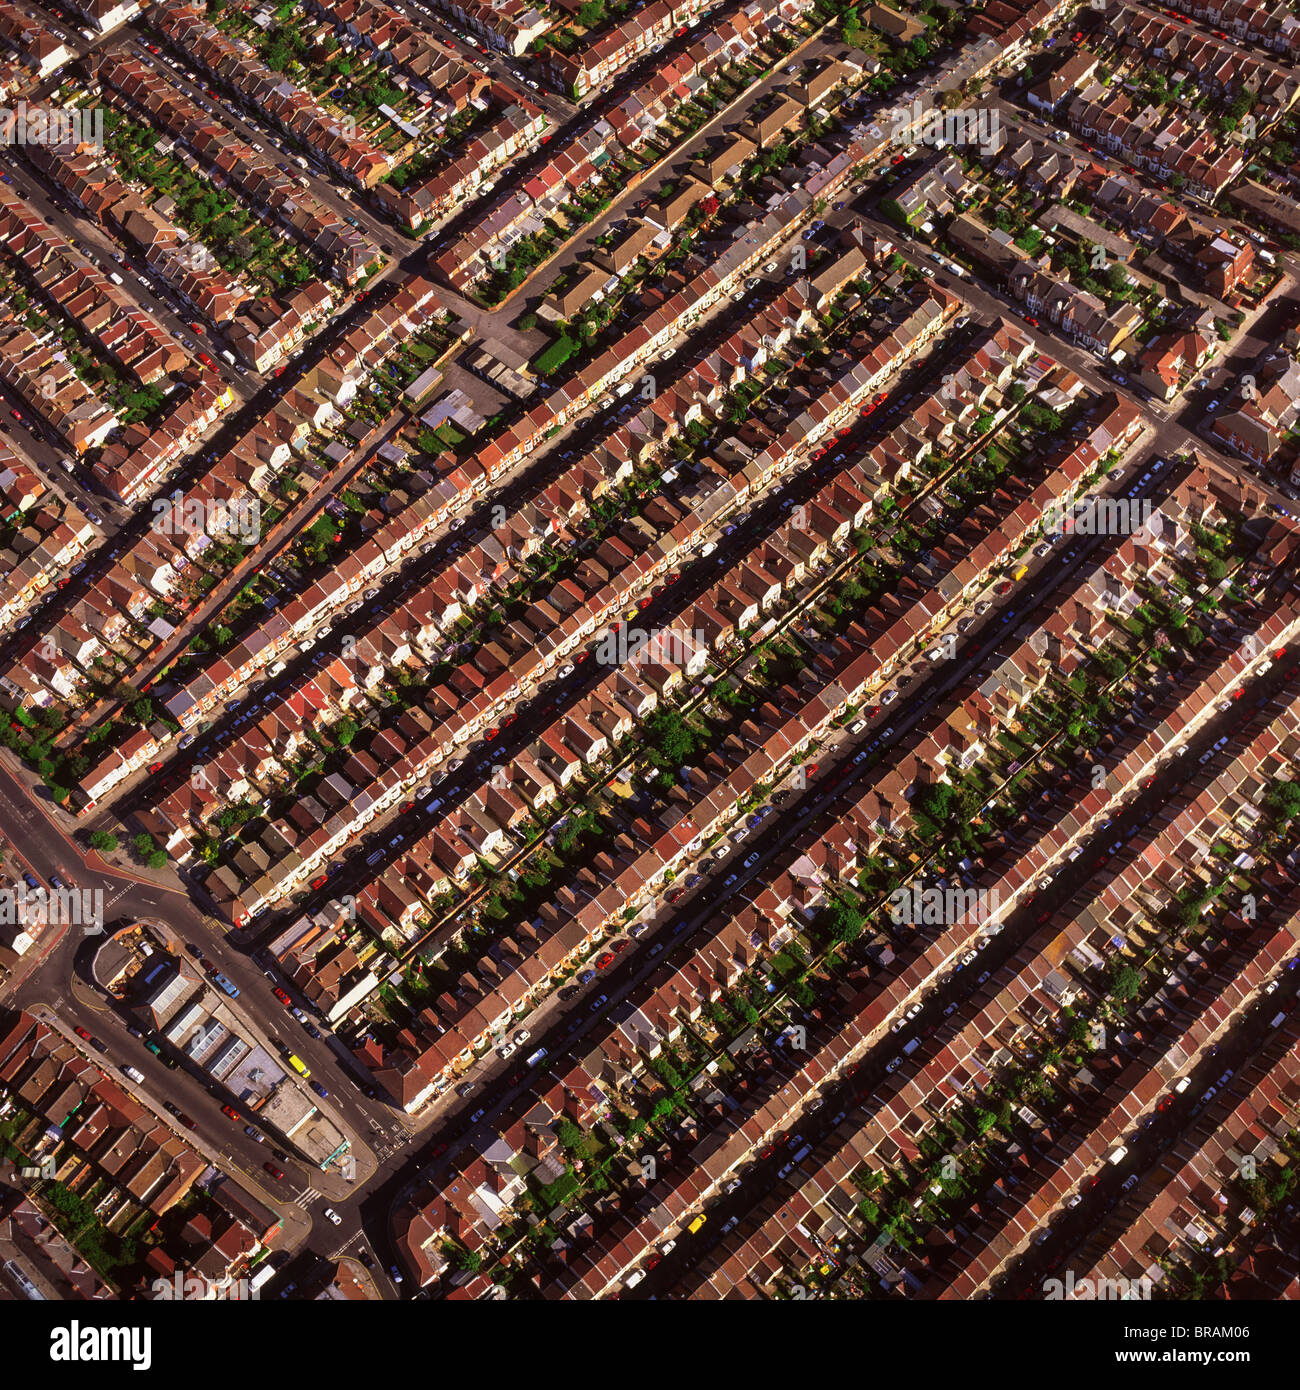 L'image aérienne de l'habitation mitoyenne, Portsmouth, Hampshire, Angleterre, Royaume-Uni, Europe Banque D'Images